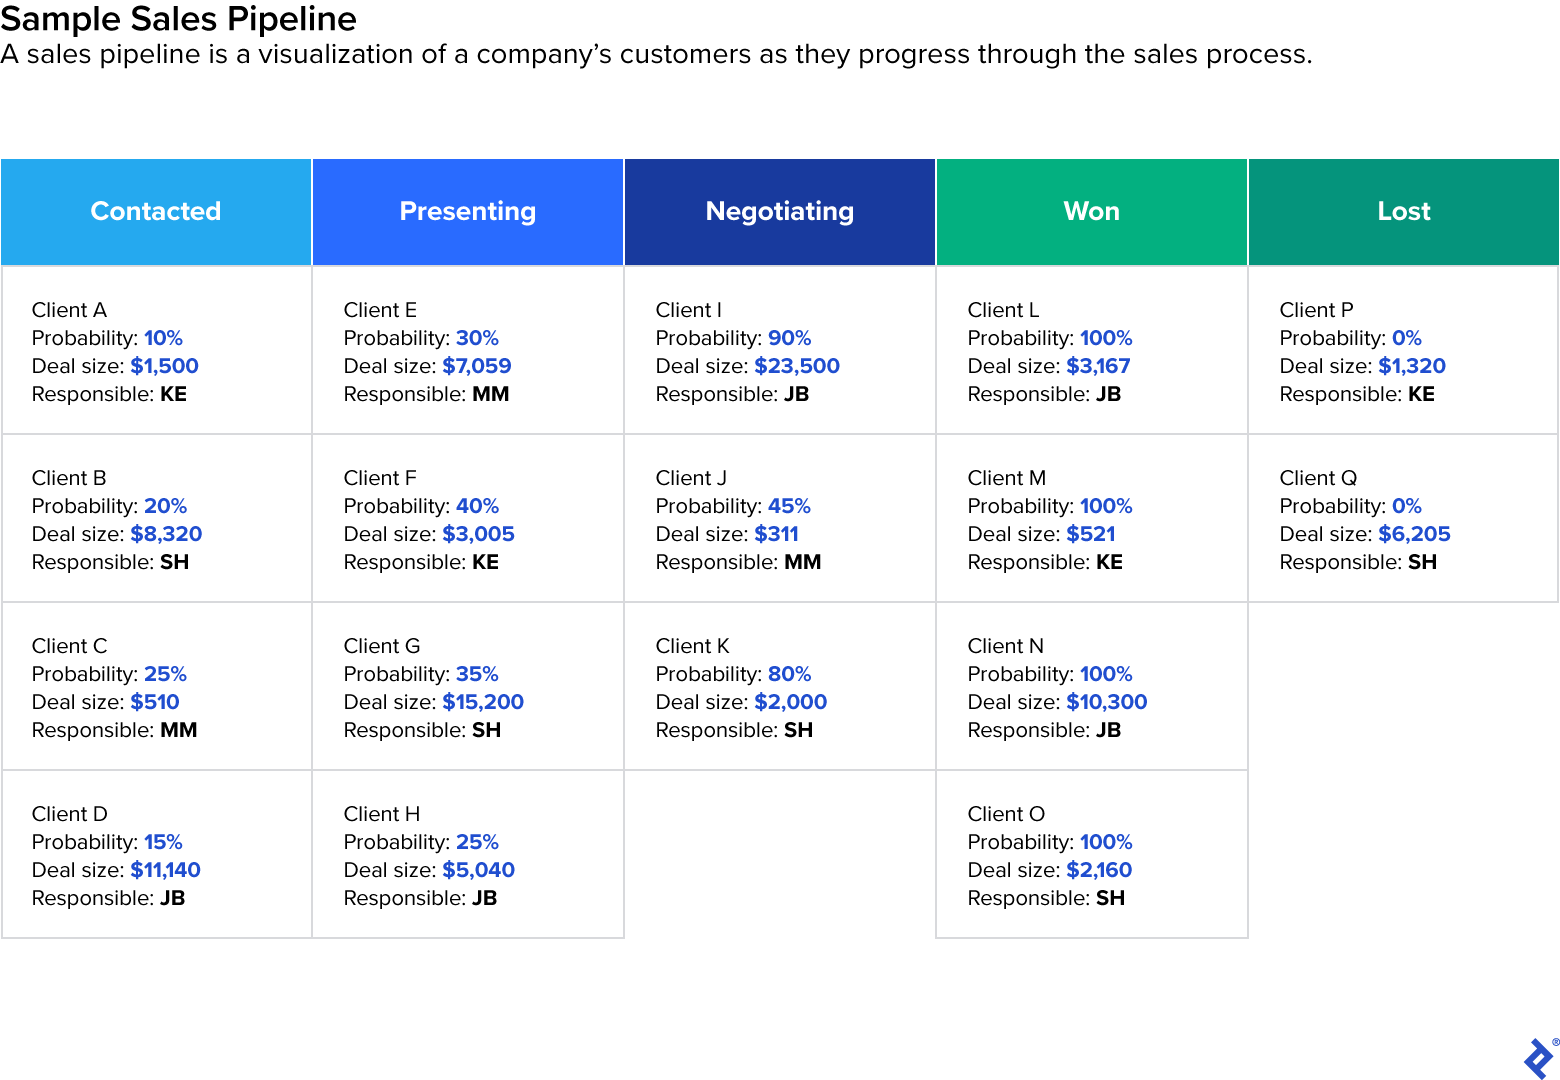 此示例销售渠道图显示了五列假设的客户状态，包括已联系、正在介绍、正在洽谈、已赢得和已失去。